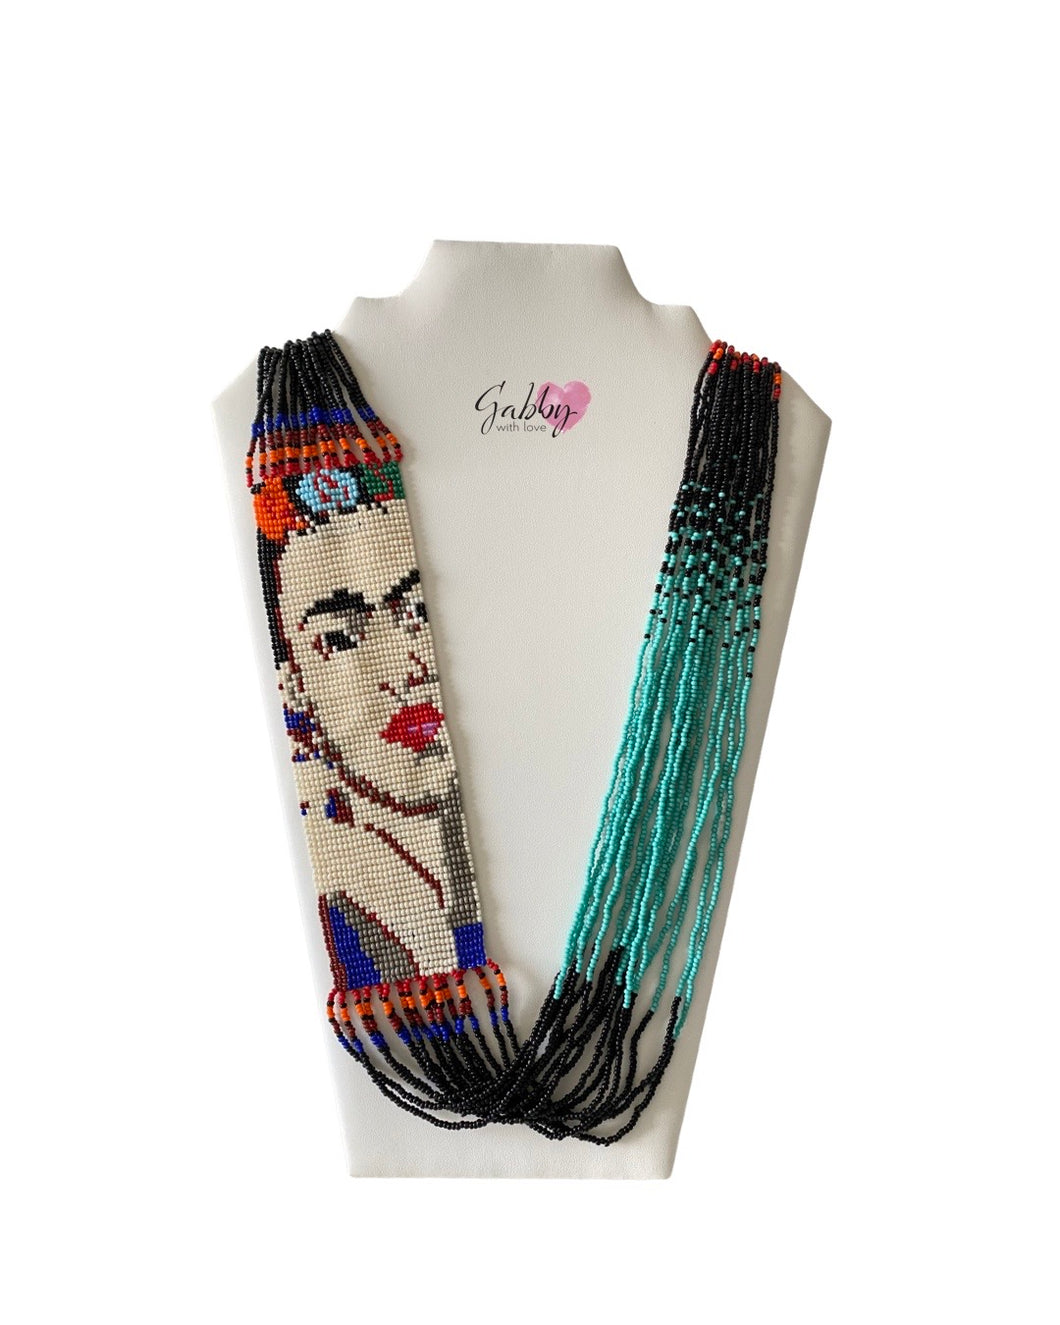 Frida Kahlo - Black Necklace